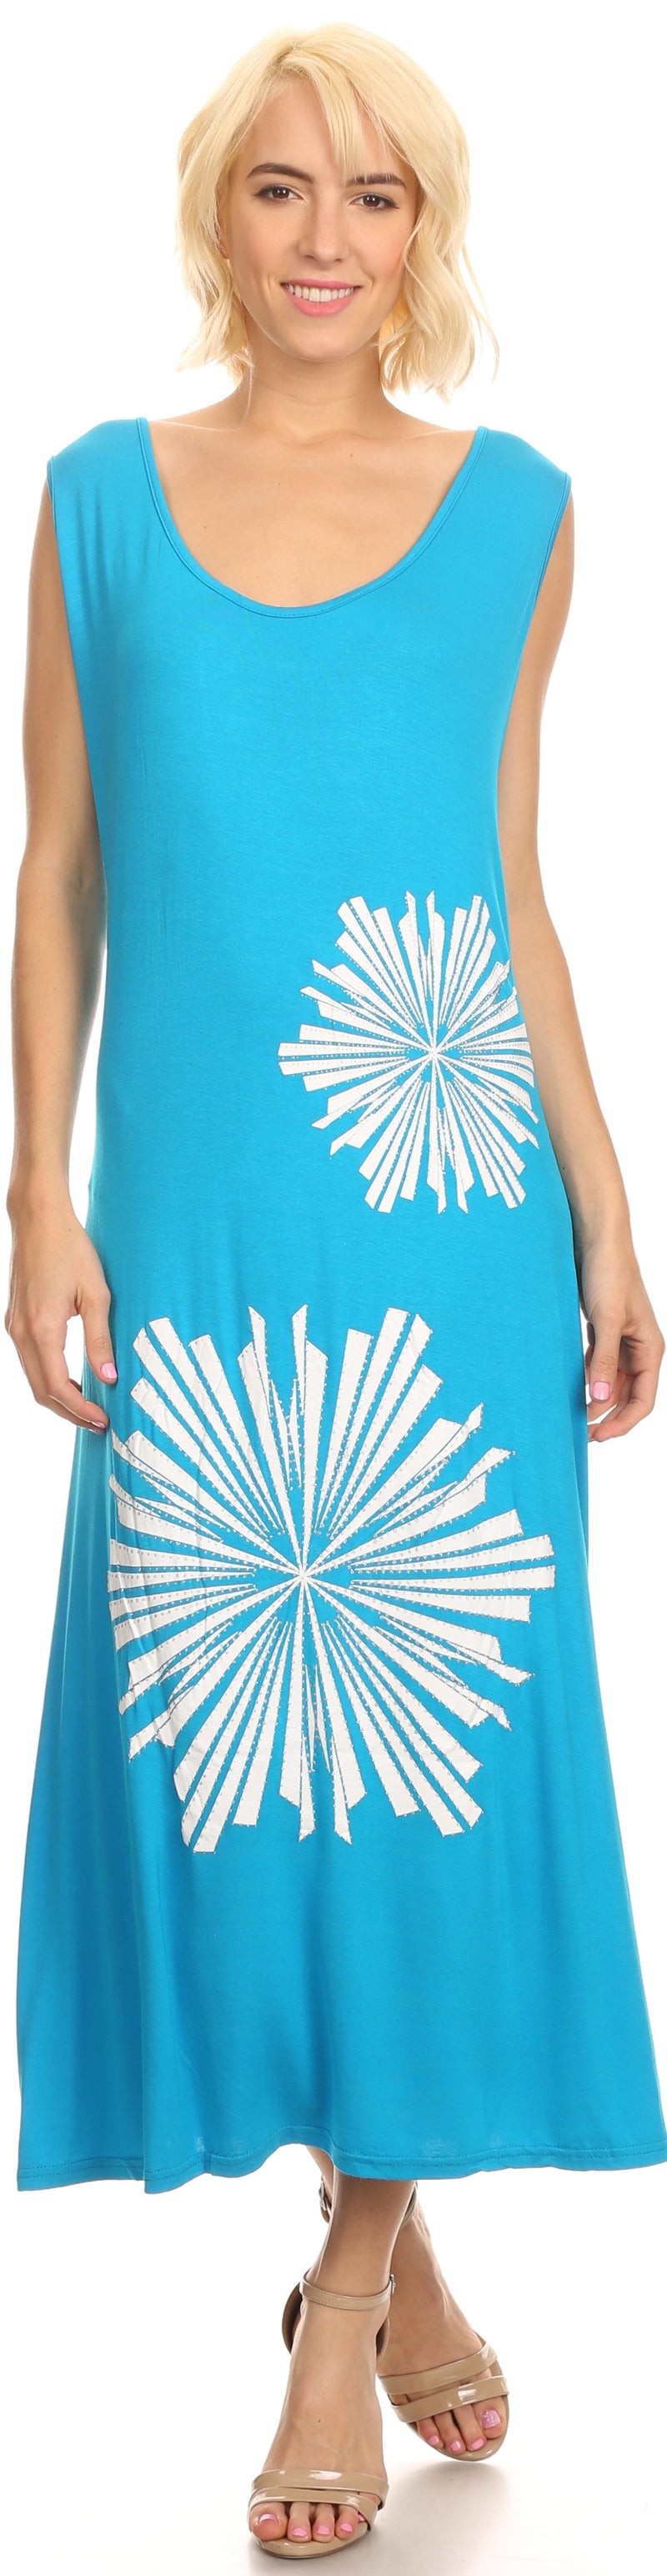 Sakkas Cilva Long Maxi Tapered Floral Paisley Printed Metal Design Lace Tank Dress